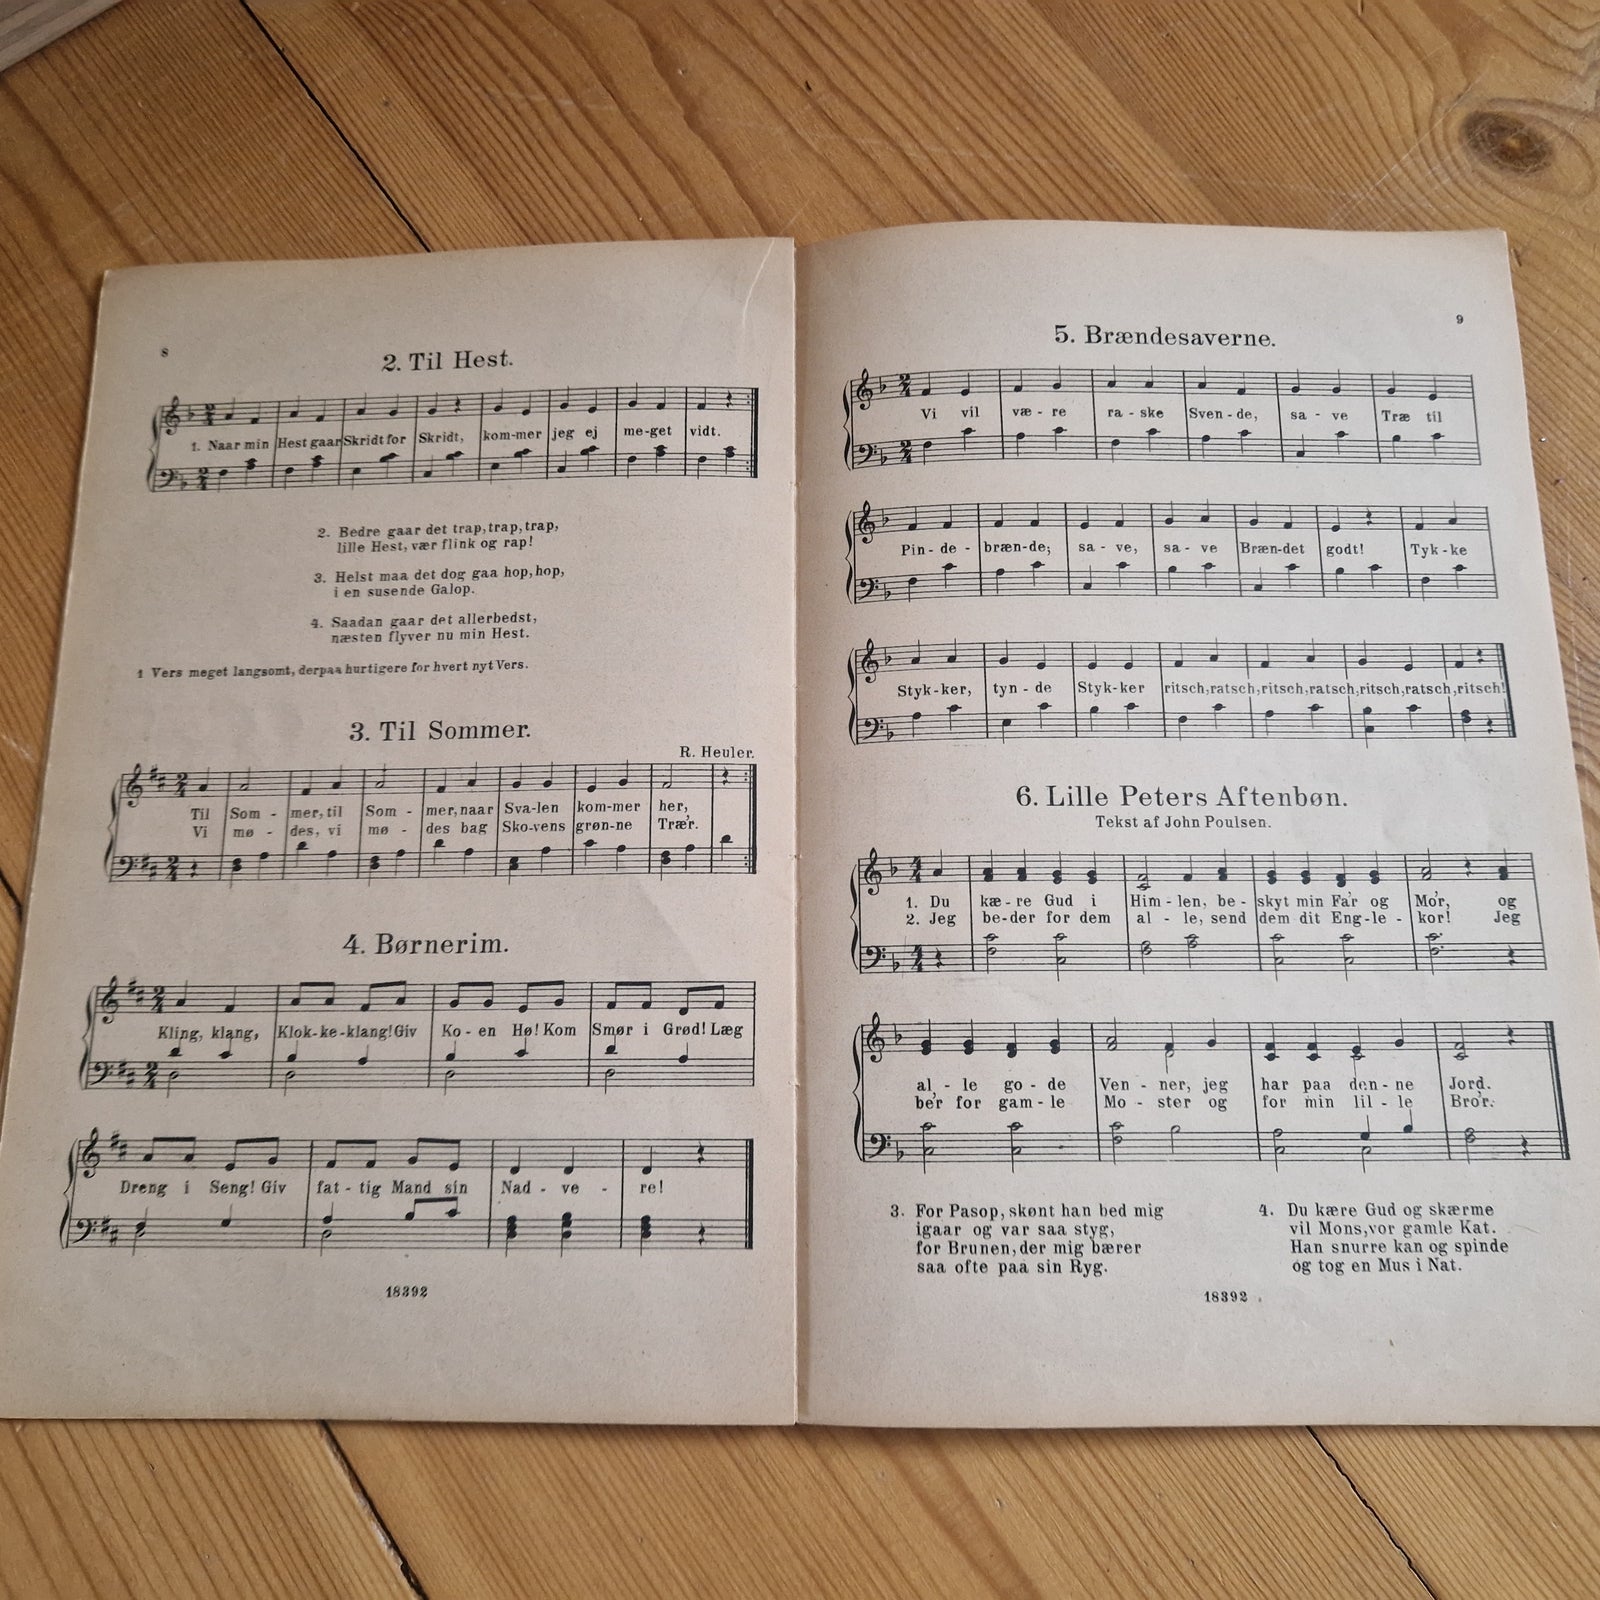 Klavernoder, Syng for dine smaabørn af Georg Parler